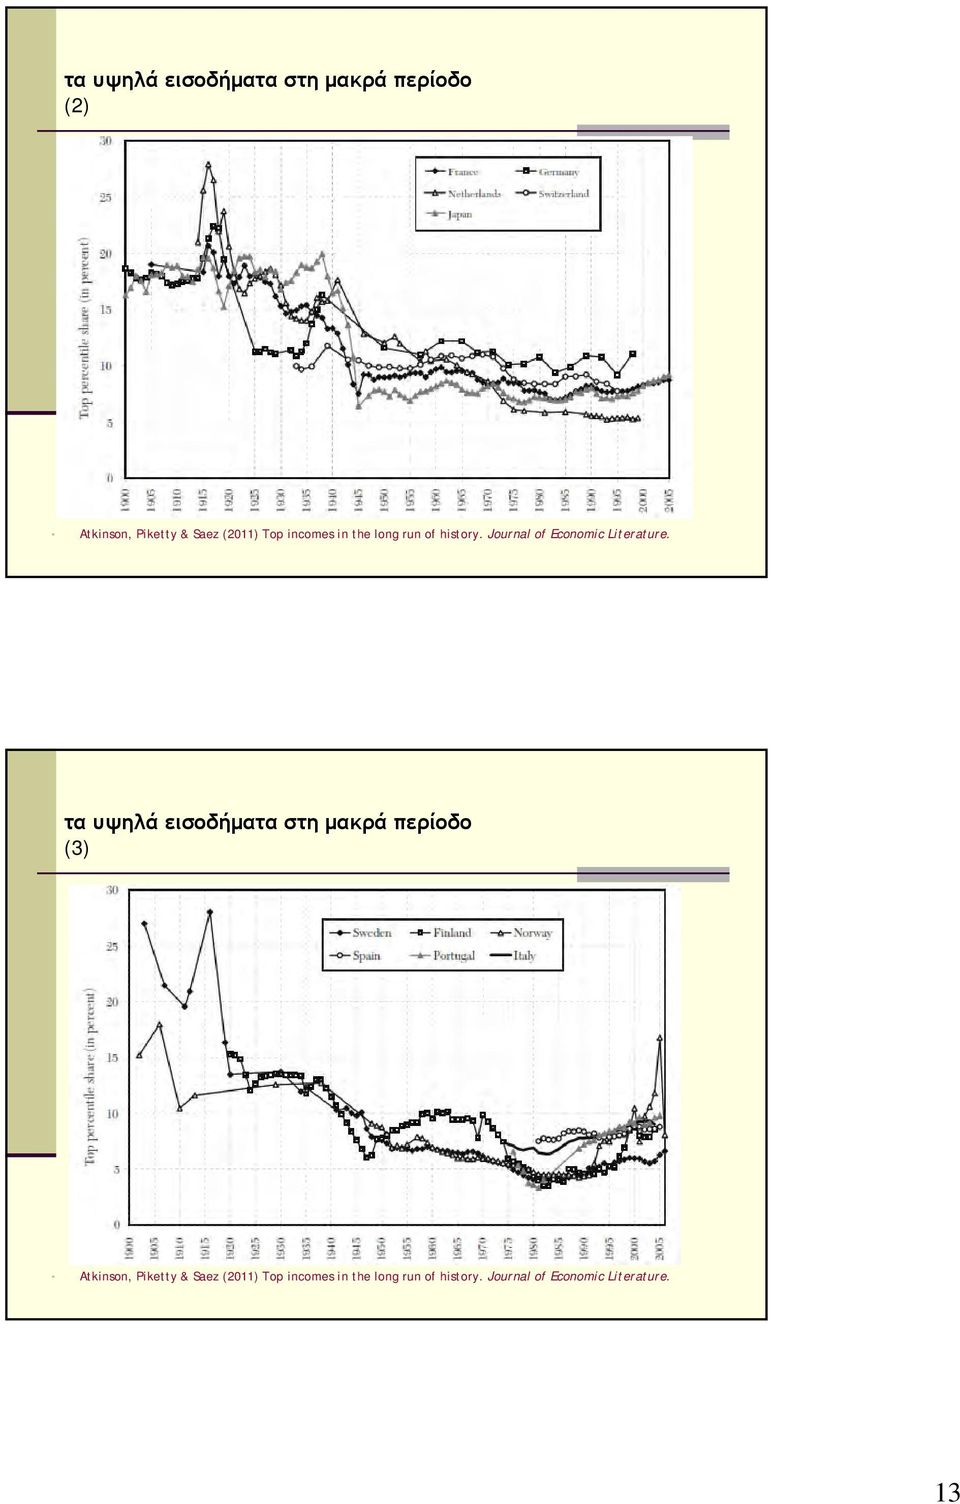 τα υψηλά εισοδήματα στη μακρά περίοδο (3) Atkinson, Piketty & Saez (2011)